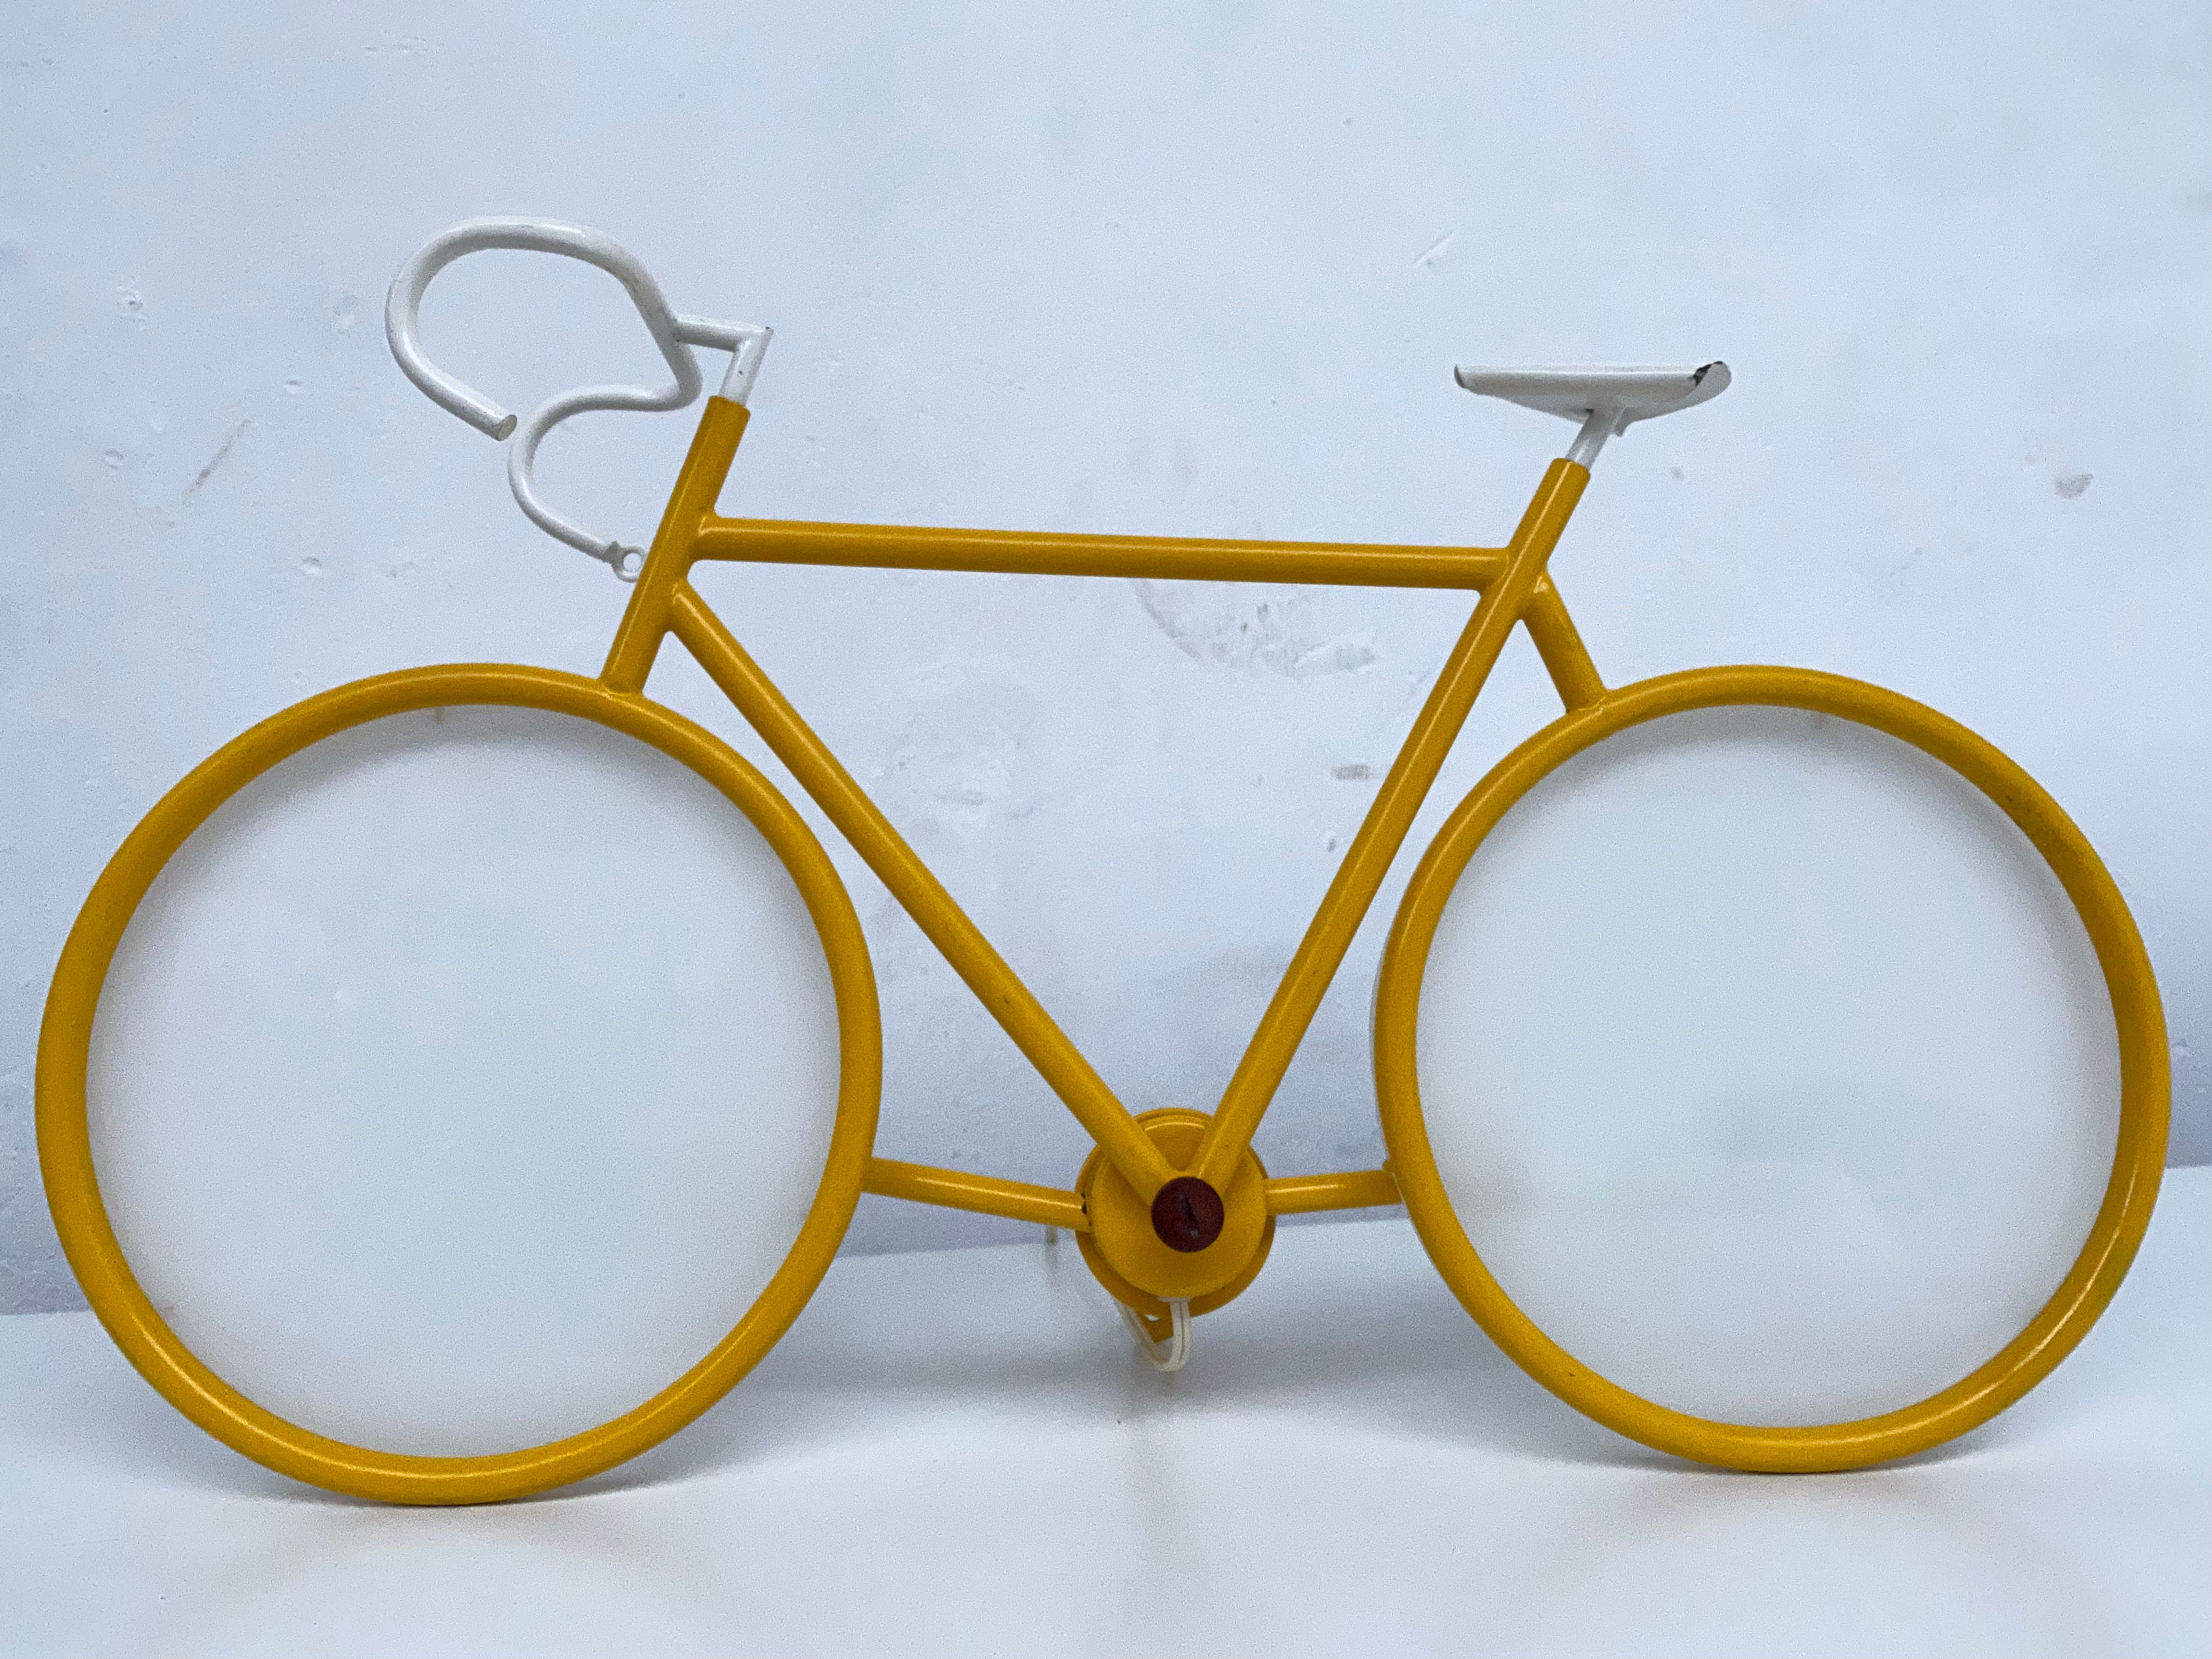 Une déclaration amusante sur votre mur ou votre bureau sous la forme de ce vélo de course Pop Art des années 1970 par la société d'éclairage italienne Zicoli.

Cadre en acier jaune et diffuseurs à 